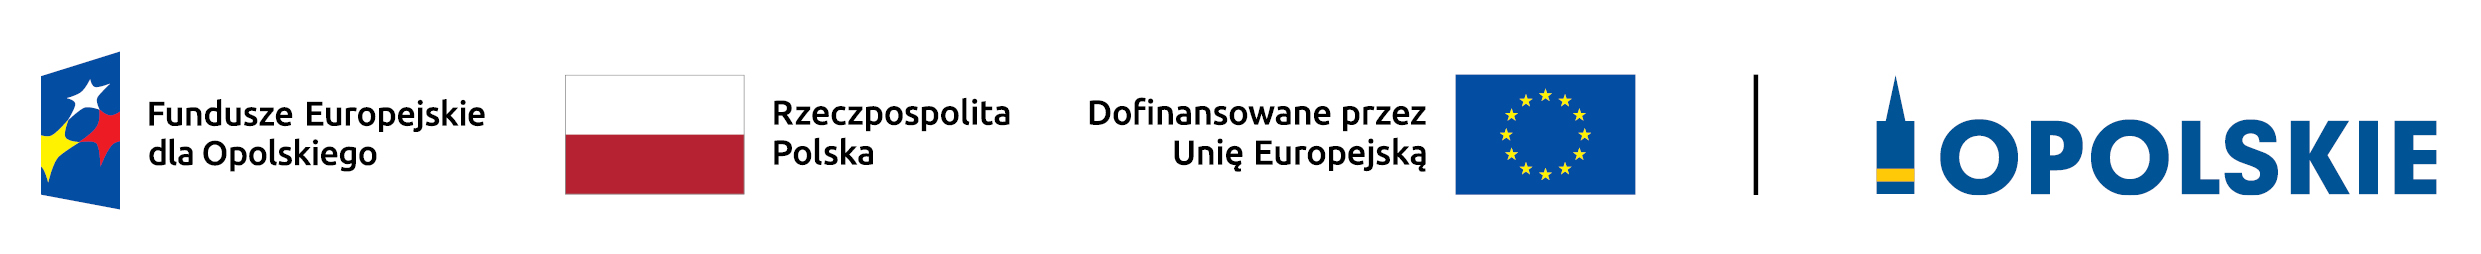 Fundusze Europejskie dla Opolskiego